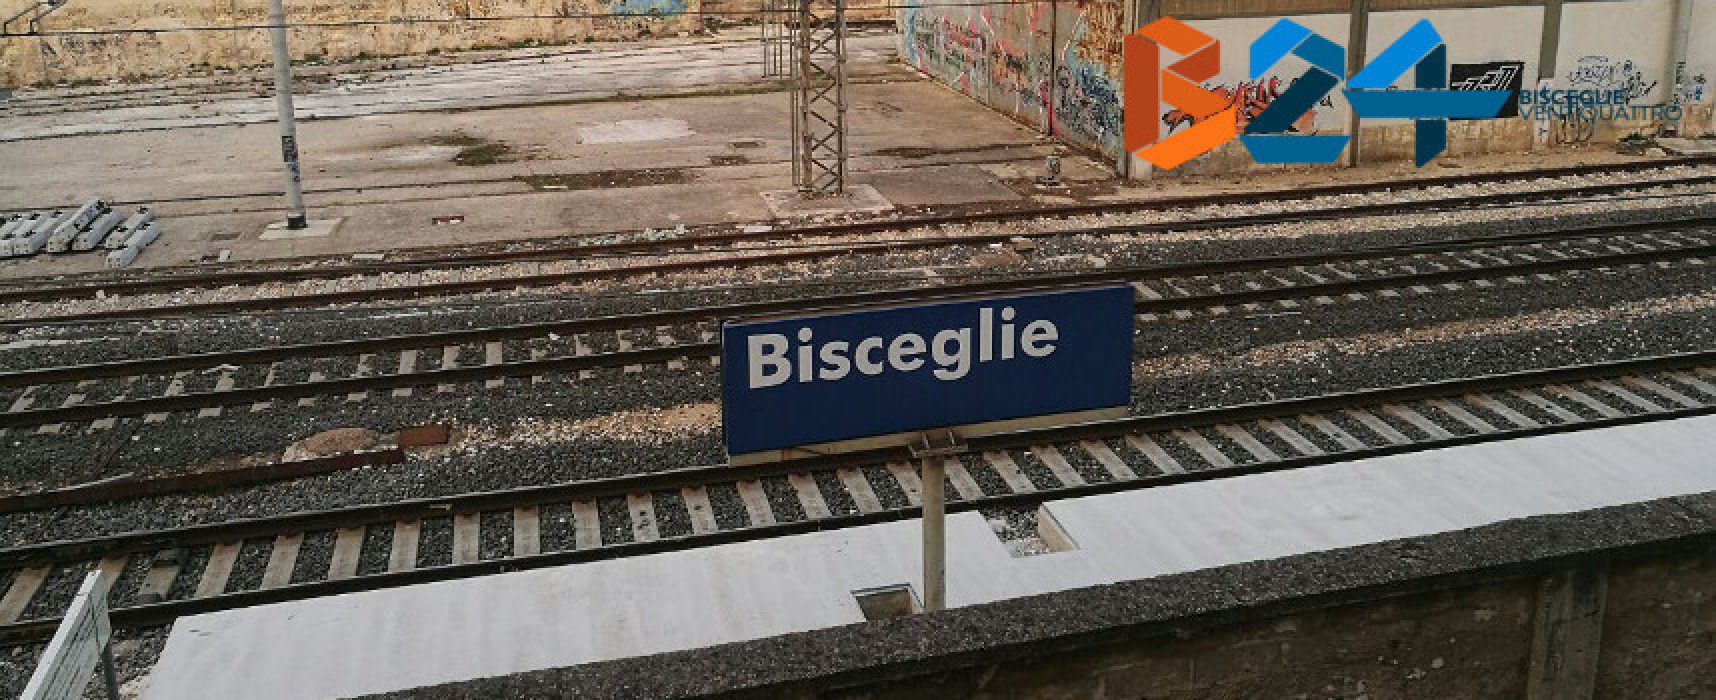 Treni: persona investita, circolazione bloccata tra Bisceglie e Trani